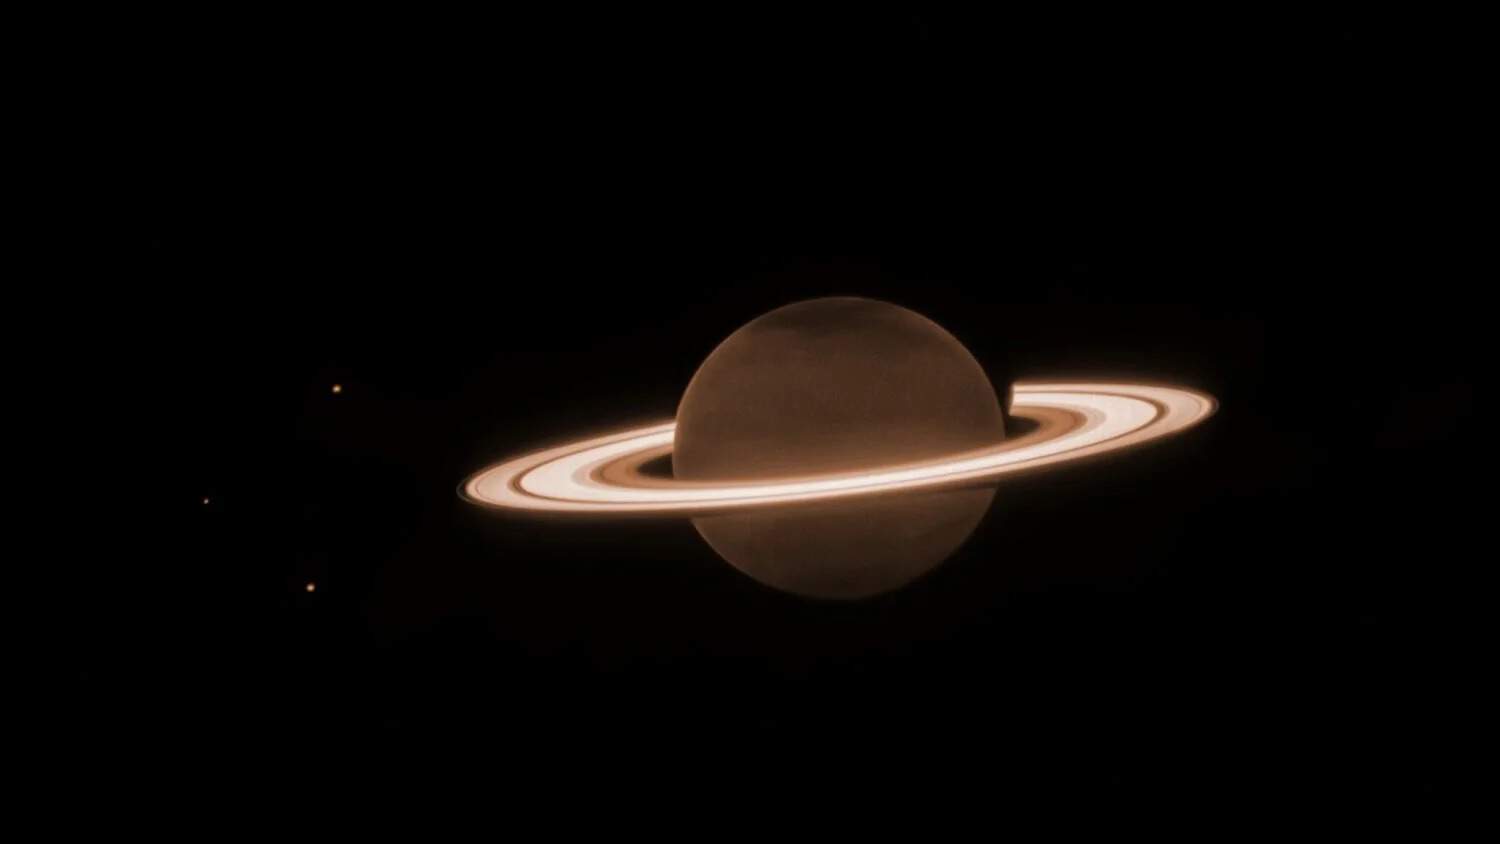 كوكب زحل، نُشرت الصورة في يونيو/ حزيران 2023: تبدو حلقات العملاق الغازي زحل بلون النيون الساطع في ضوء الأشعة تحت الحمراء القريبة. يظهر لون الكوكب نفسه أغمق لأن غلافه الجوي يحتوي على غاز الميثان الذي يمتص ضوء الشمس عند هذه الأطوال الموجية. وكالة ناسا، وكالة الفضاء الأوروبية، وكالة الفضاء الكندية، معهد مراصد علوم الفضاء، ماثيو تسكارينو (معهد البحث عن الذكاء الخارج الأرضي)، ماثيو هيدمان (جامعة آيداهو)، مريم المعتمد (جامعة كورنيل)، مارك شوالتر (معهد البحث عن الذكاء الخارج الأرضي)، لي فليتشر (جامعة ليستر) هايدي هامل (الاتحاد الجامعي للأبحاث الفلكيّة)، معالجة الصورة: جوزيف ديباسكوالي (معهد مراصد علوم الفضاء)